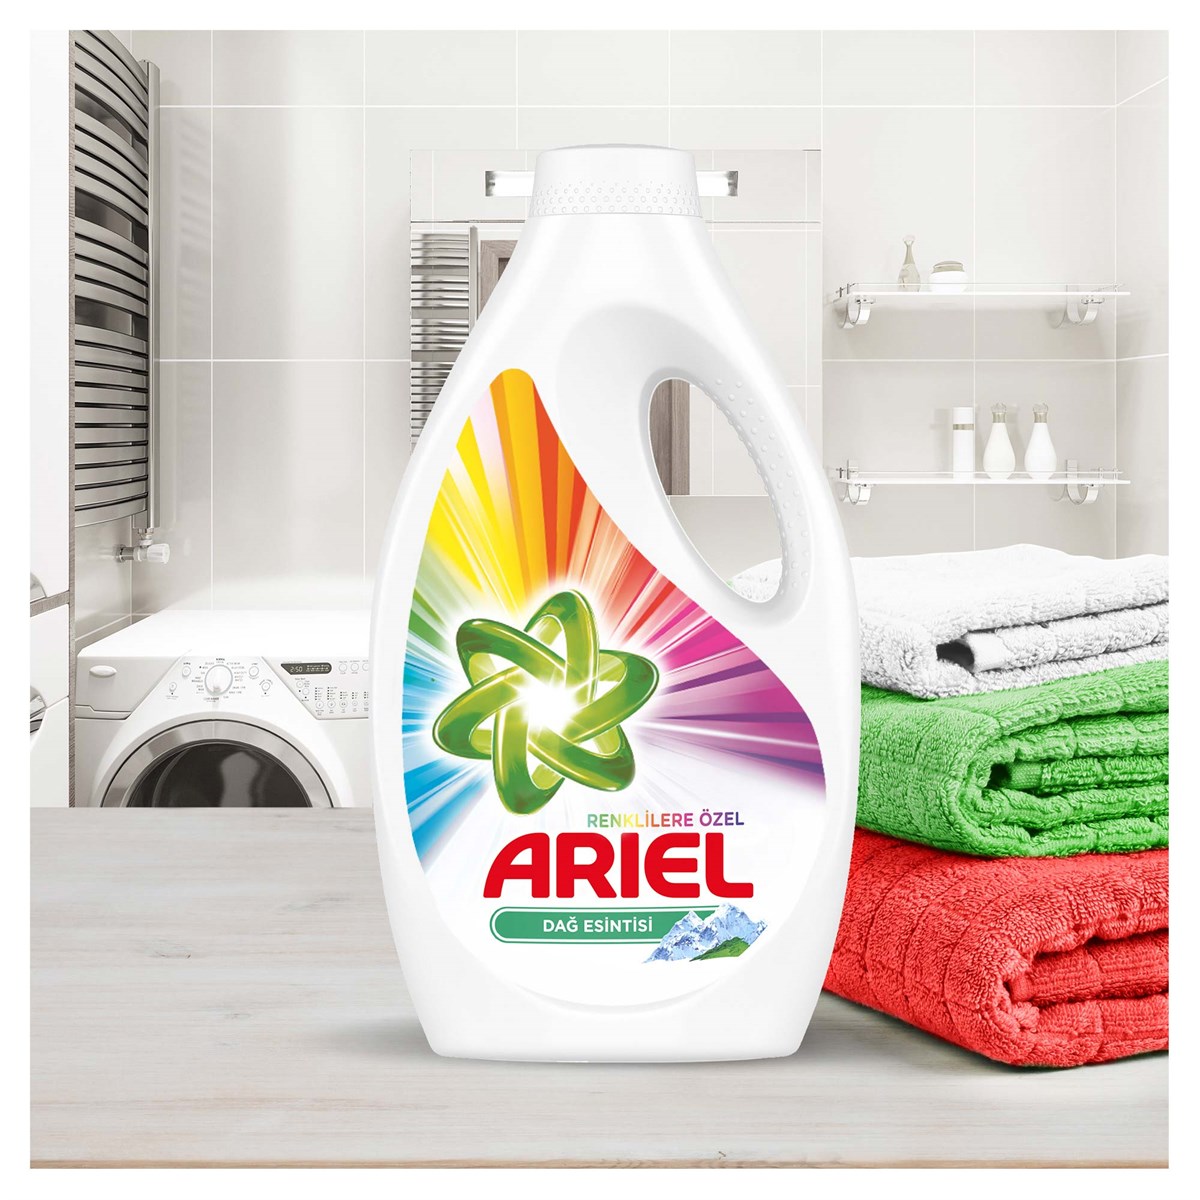 Ariel 26 Yıkama Sıvı Çamaşır Deterjanı Dağ Esintisi Renkliler İçin